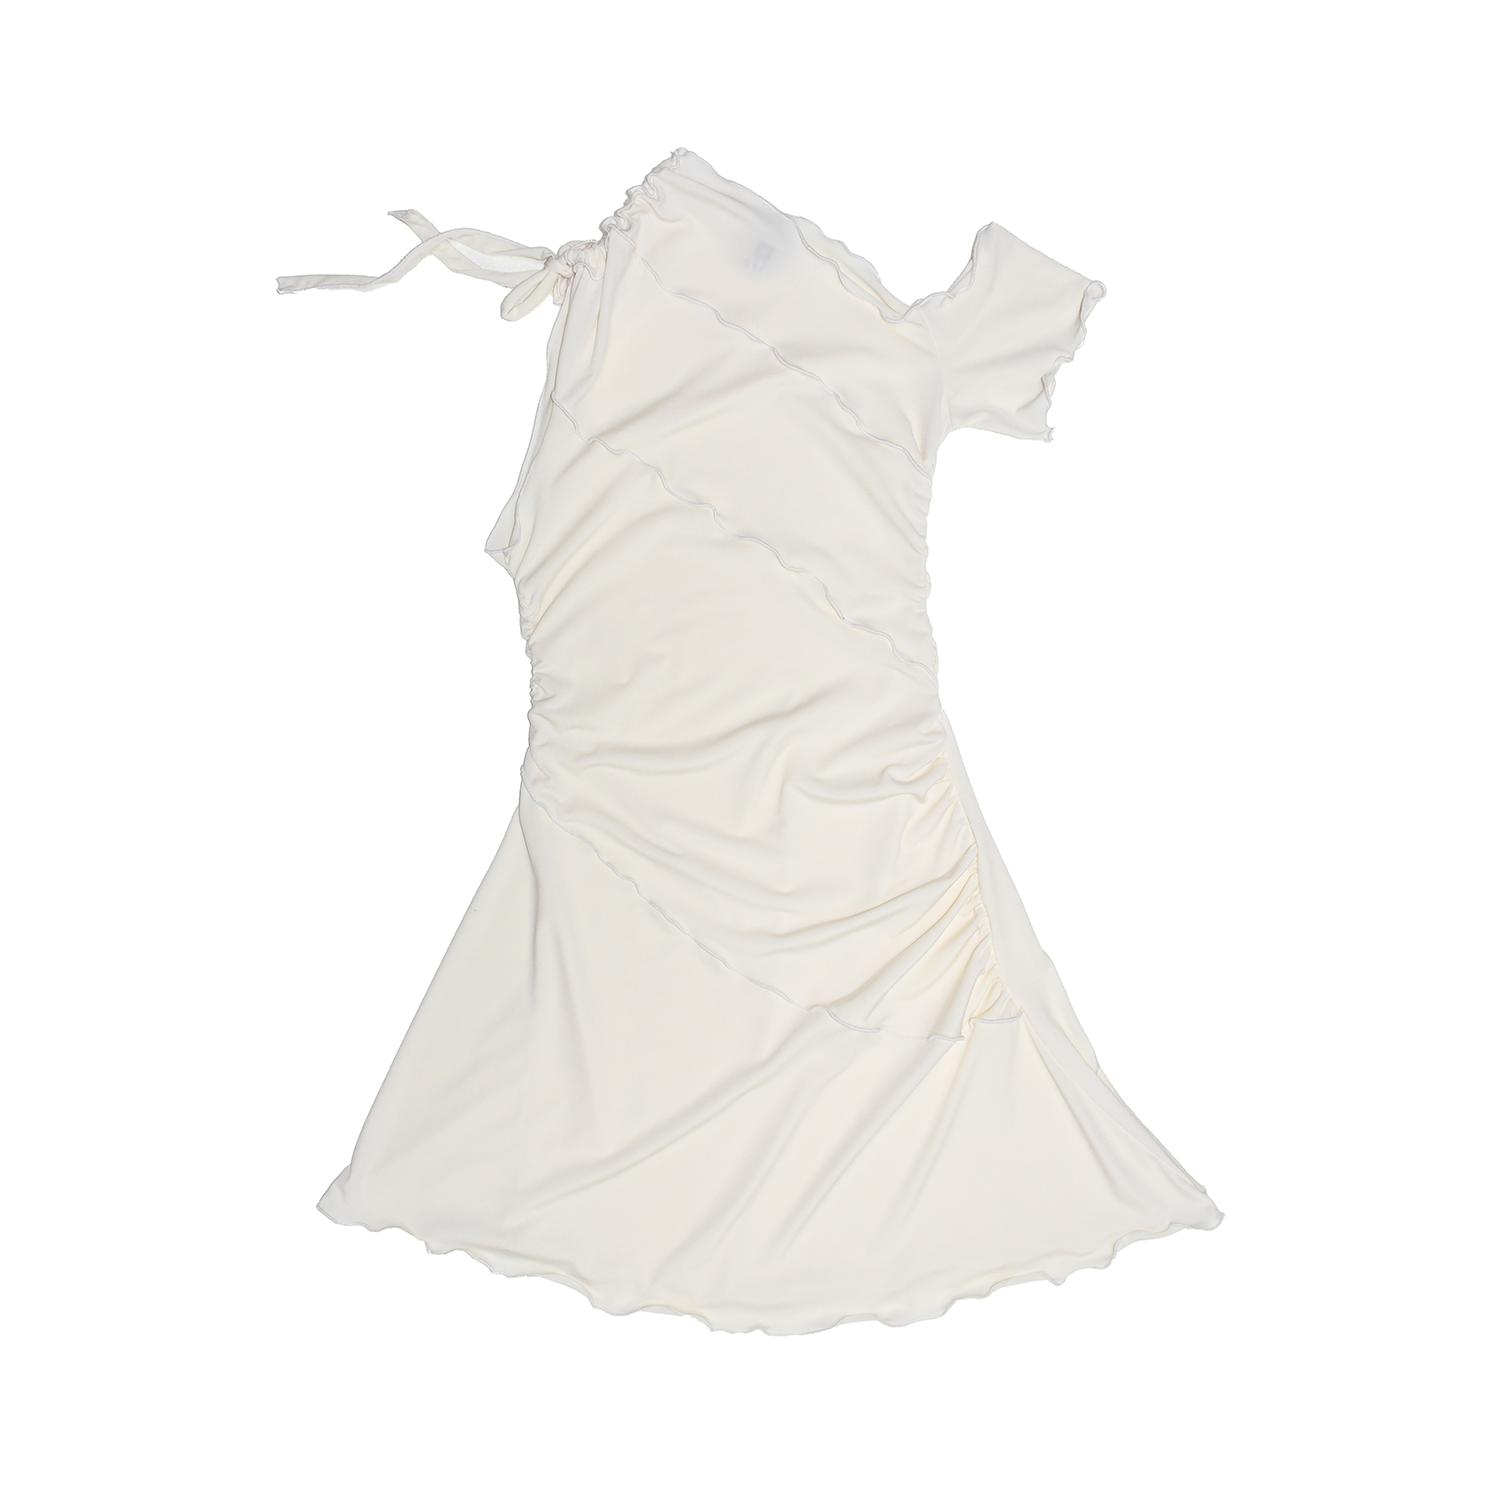 OATS - Summer Dress Mini - Ivory